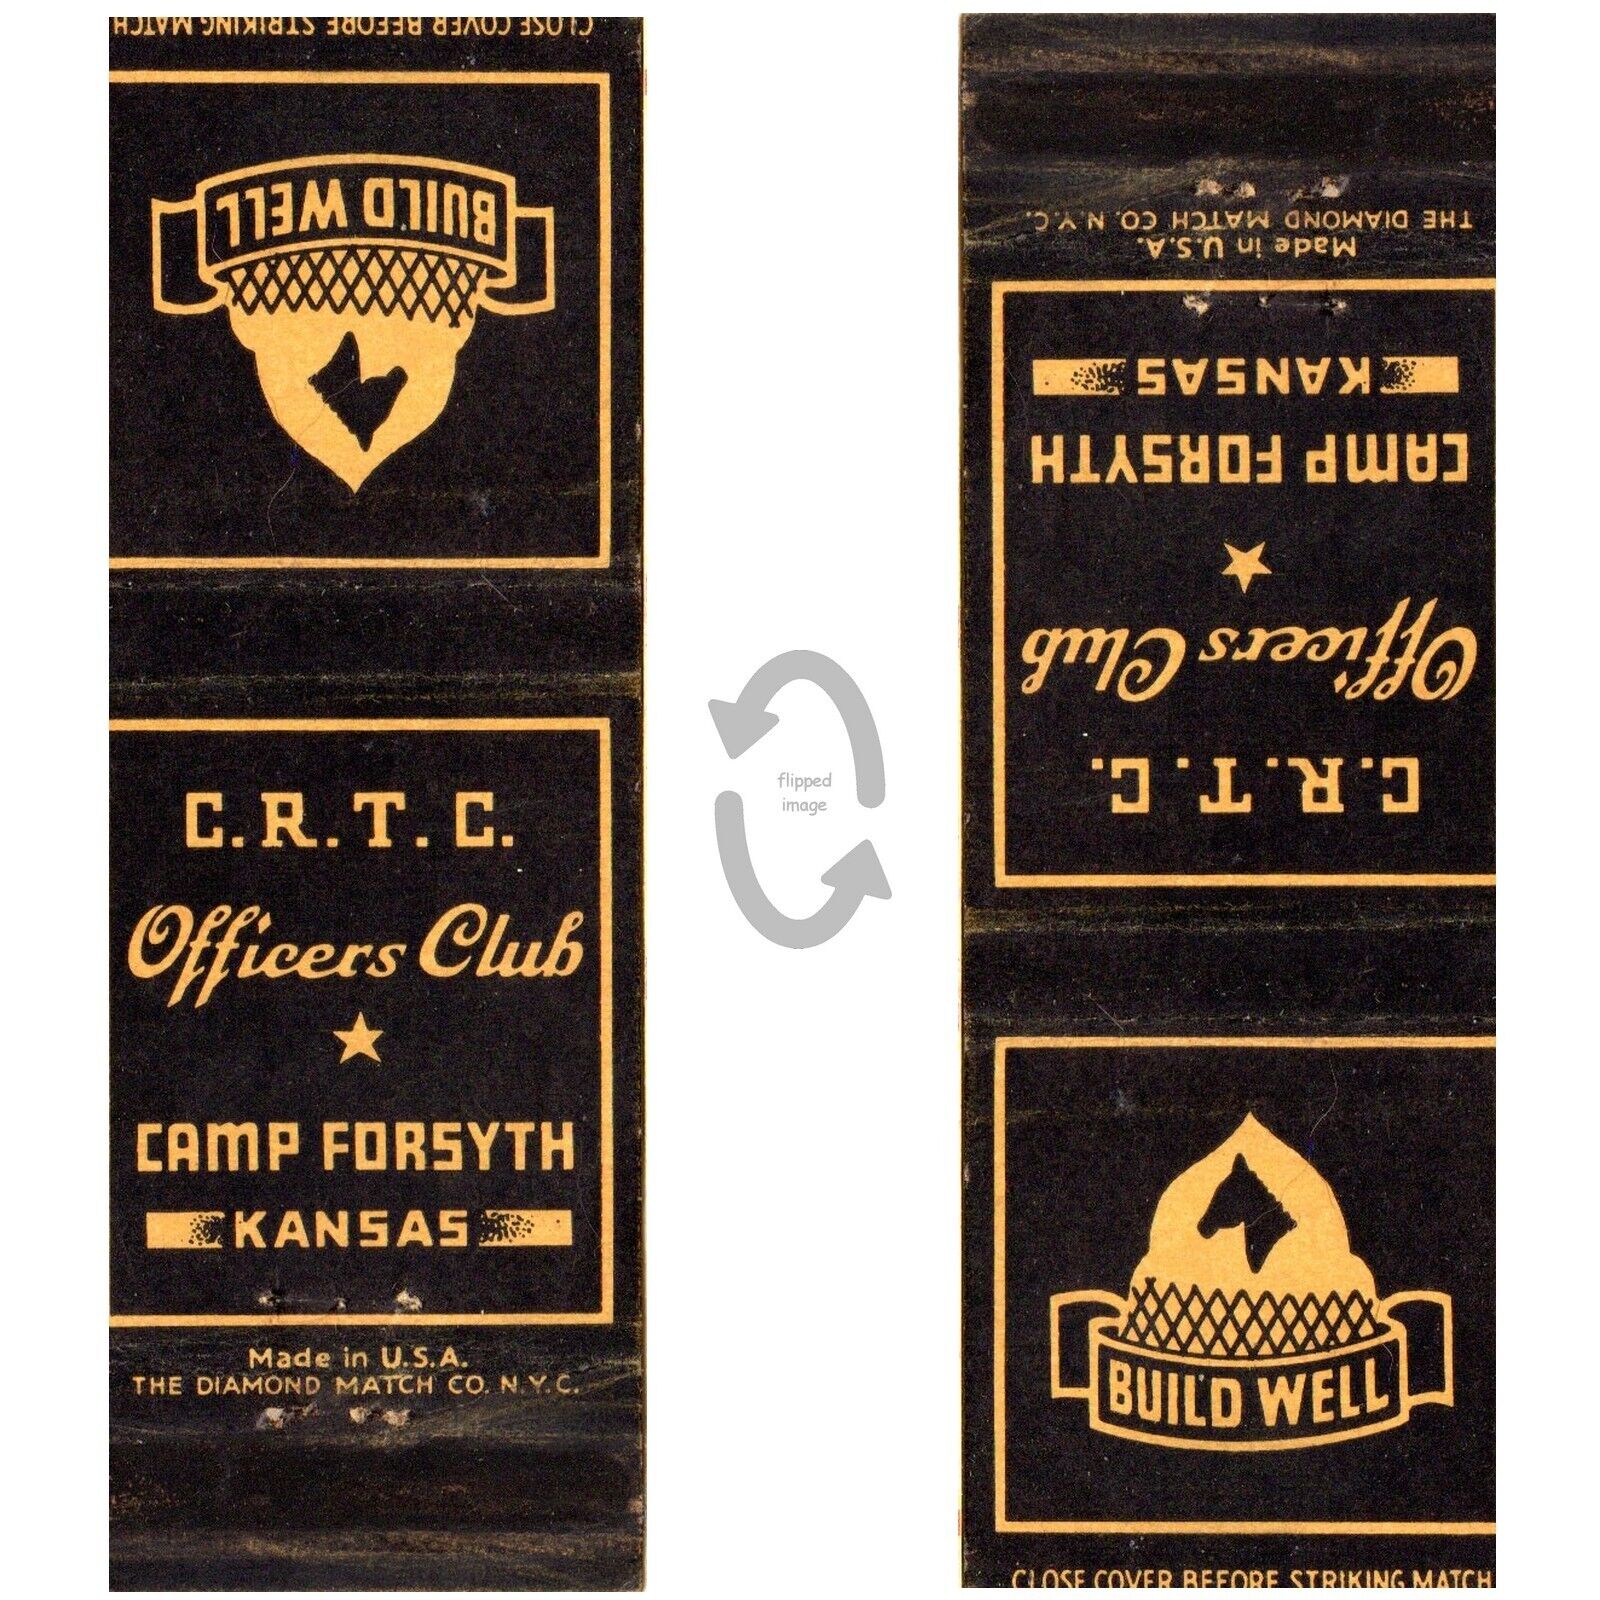 Vintage Matchbook Cover CRTC Officers Club Camp Forsyth Kansas Ft Riley 1940s